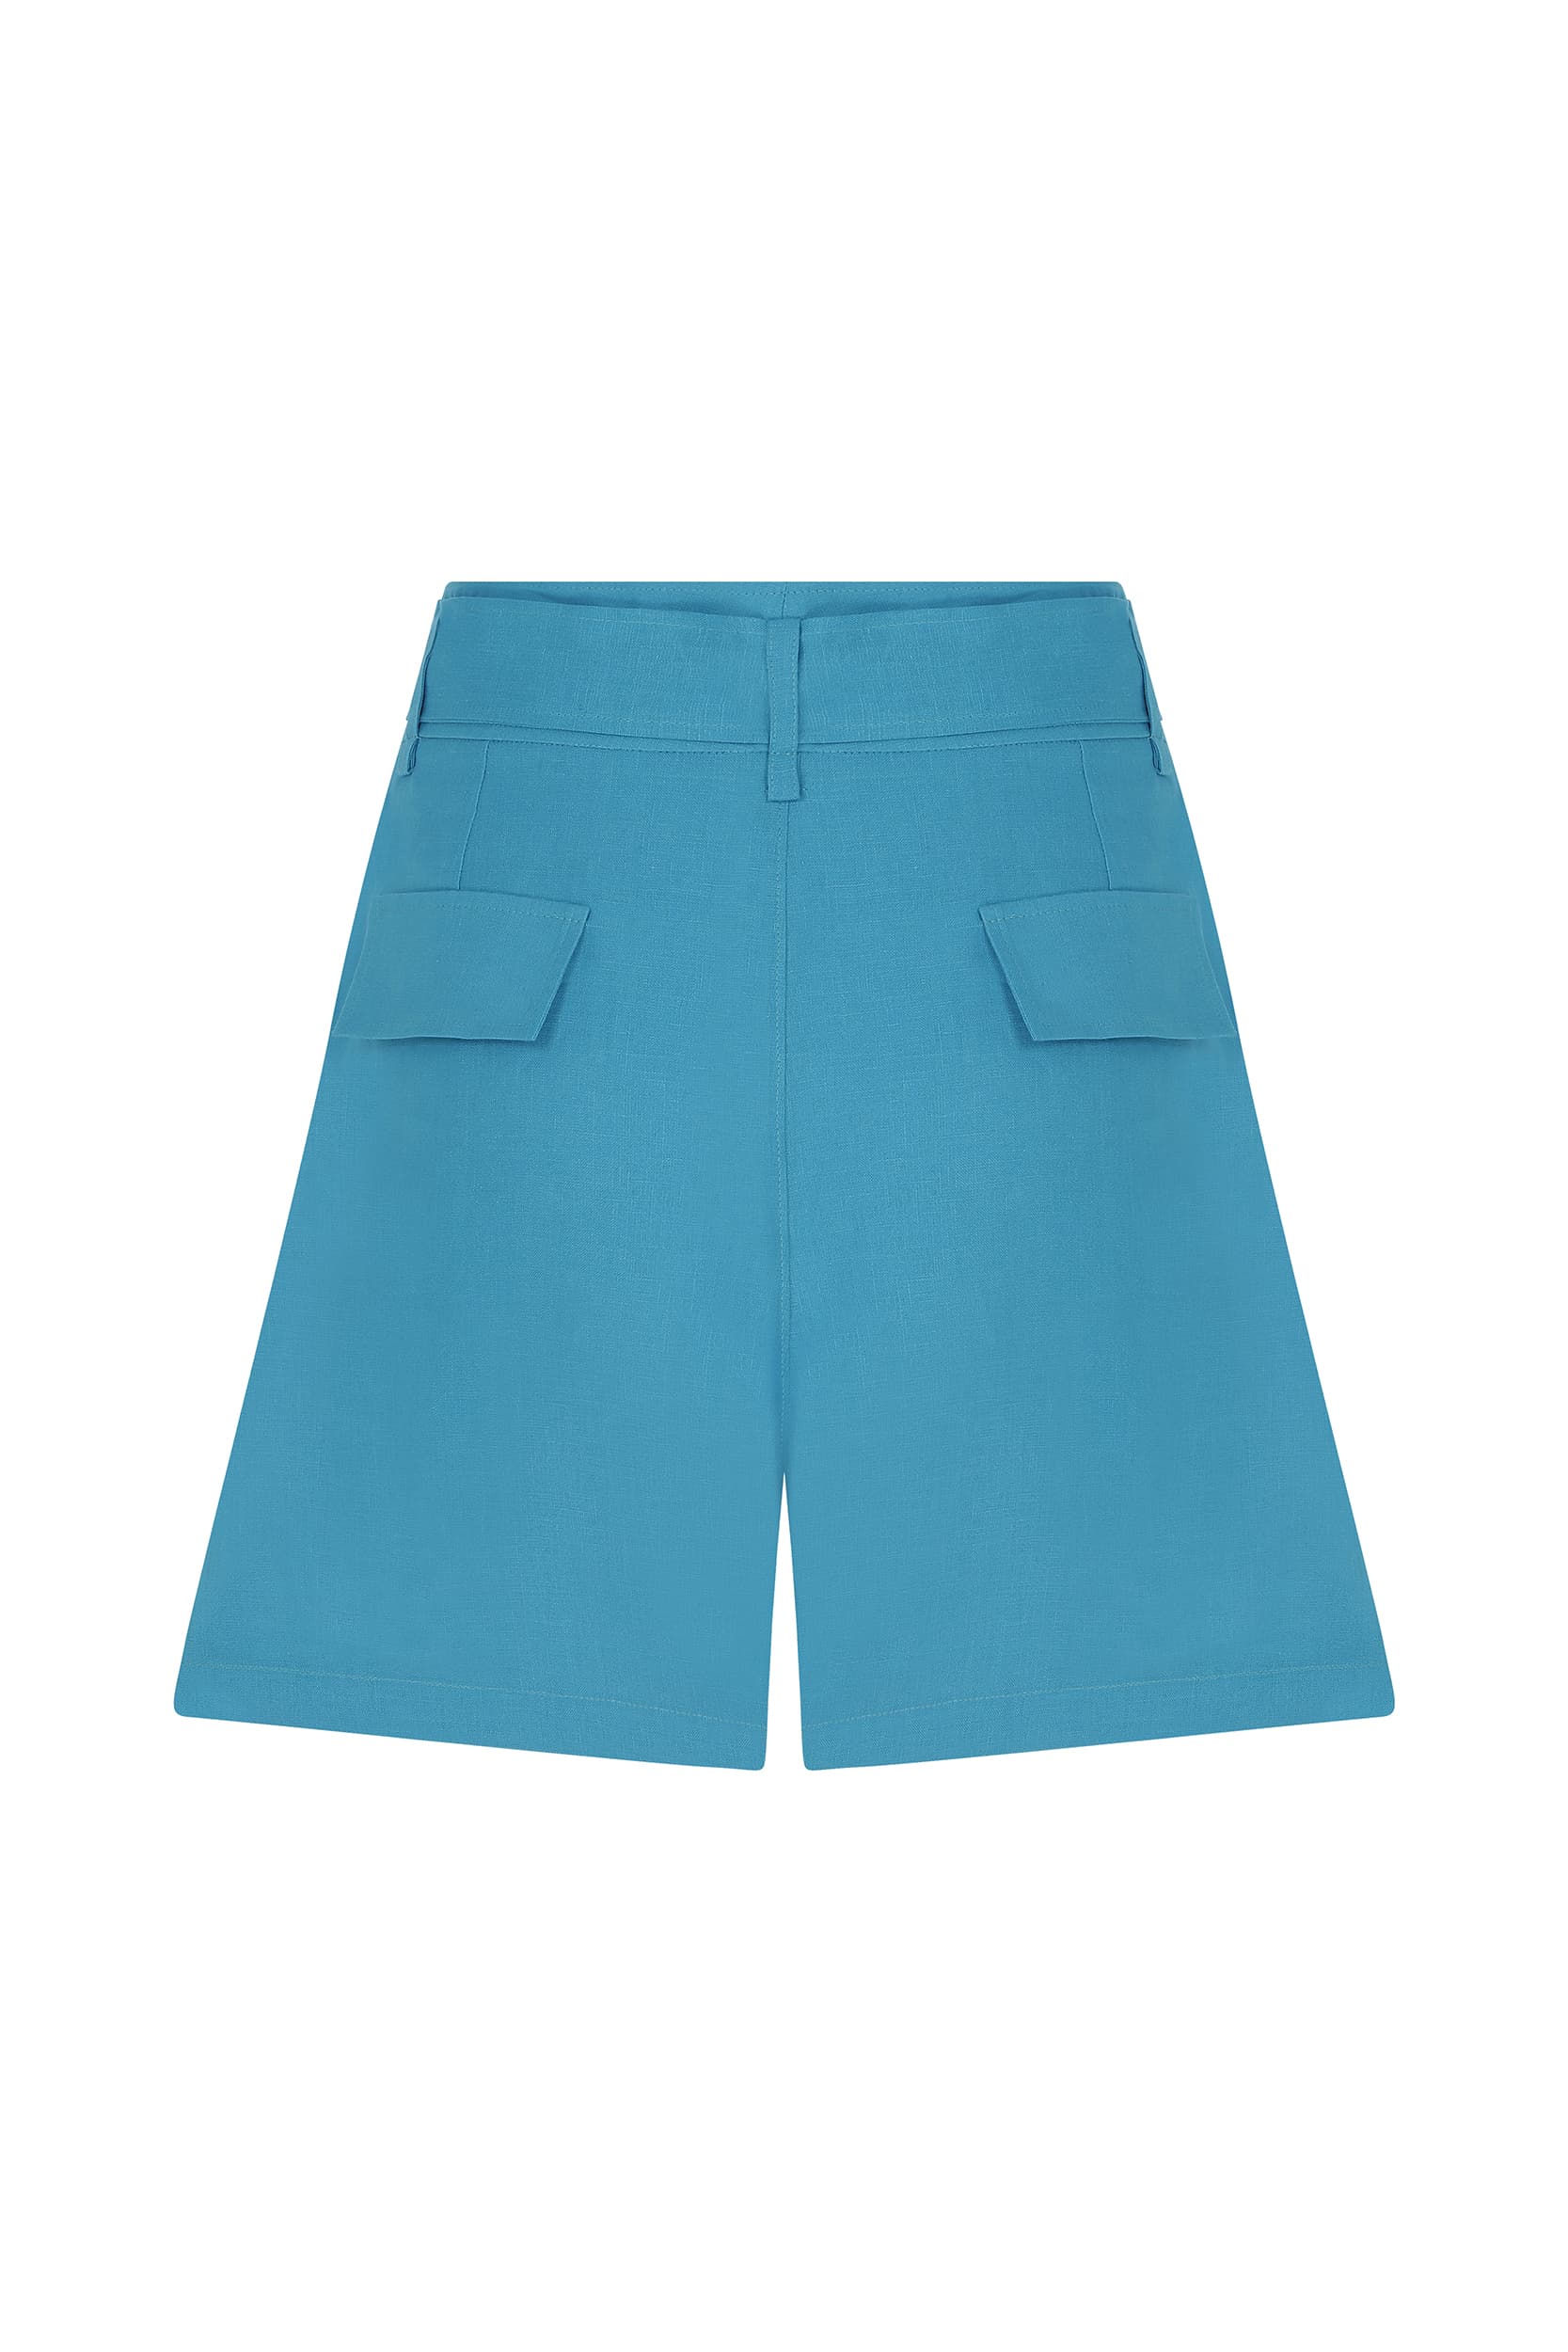 Turquoise Belt Detailed Shorts-- [TURQUOISE]